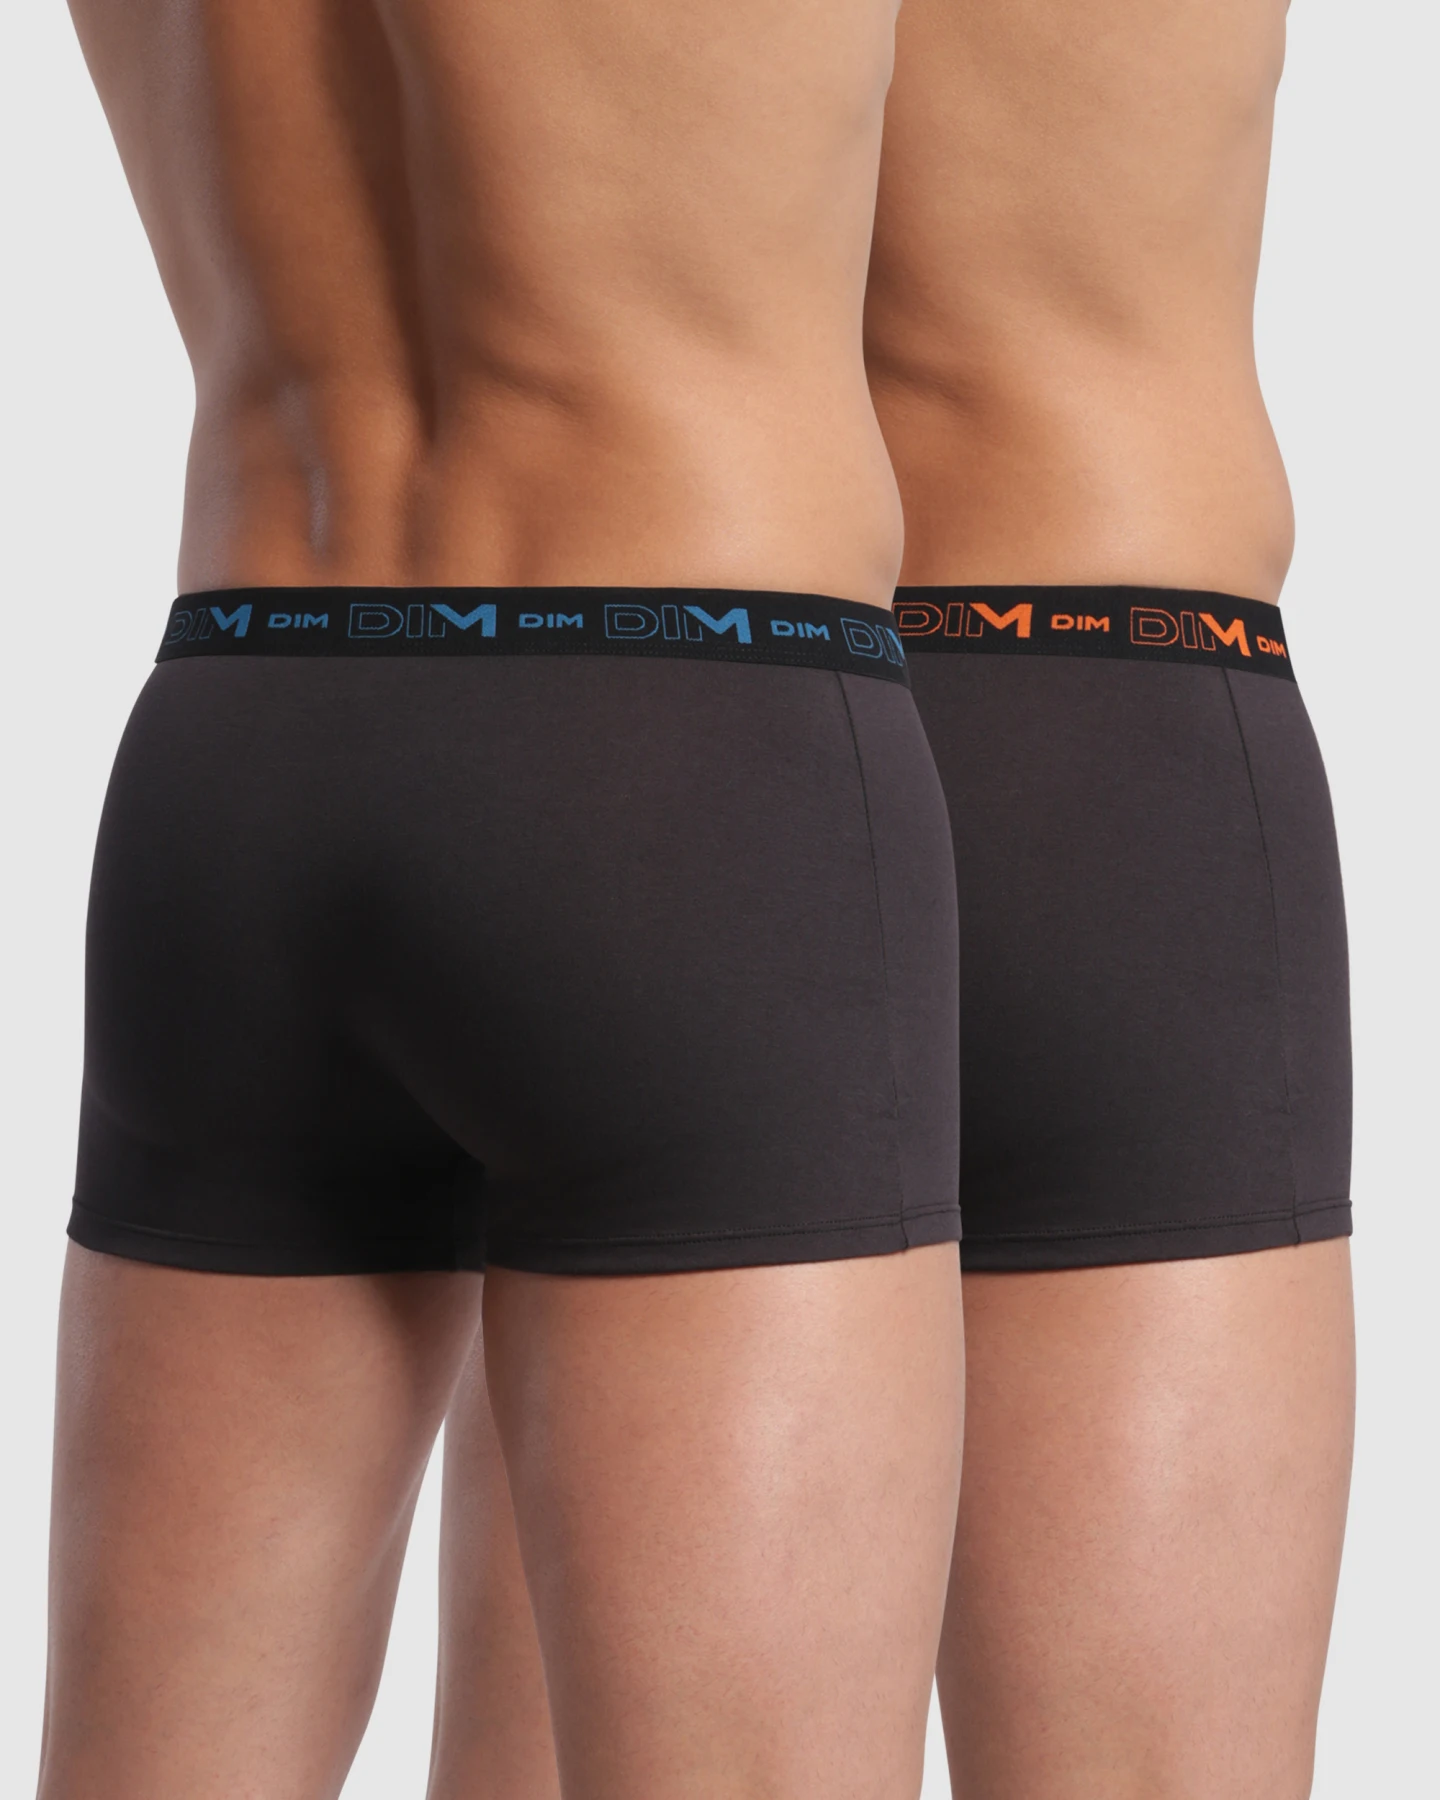 Grundlæggende stil stretch cotton boxershorts 2 Pack for maksimal DIM komfort